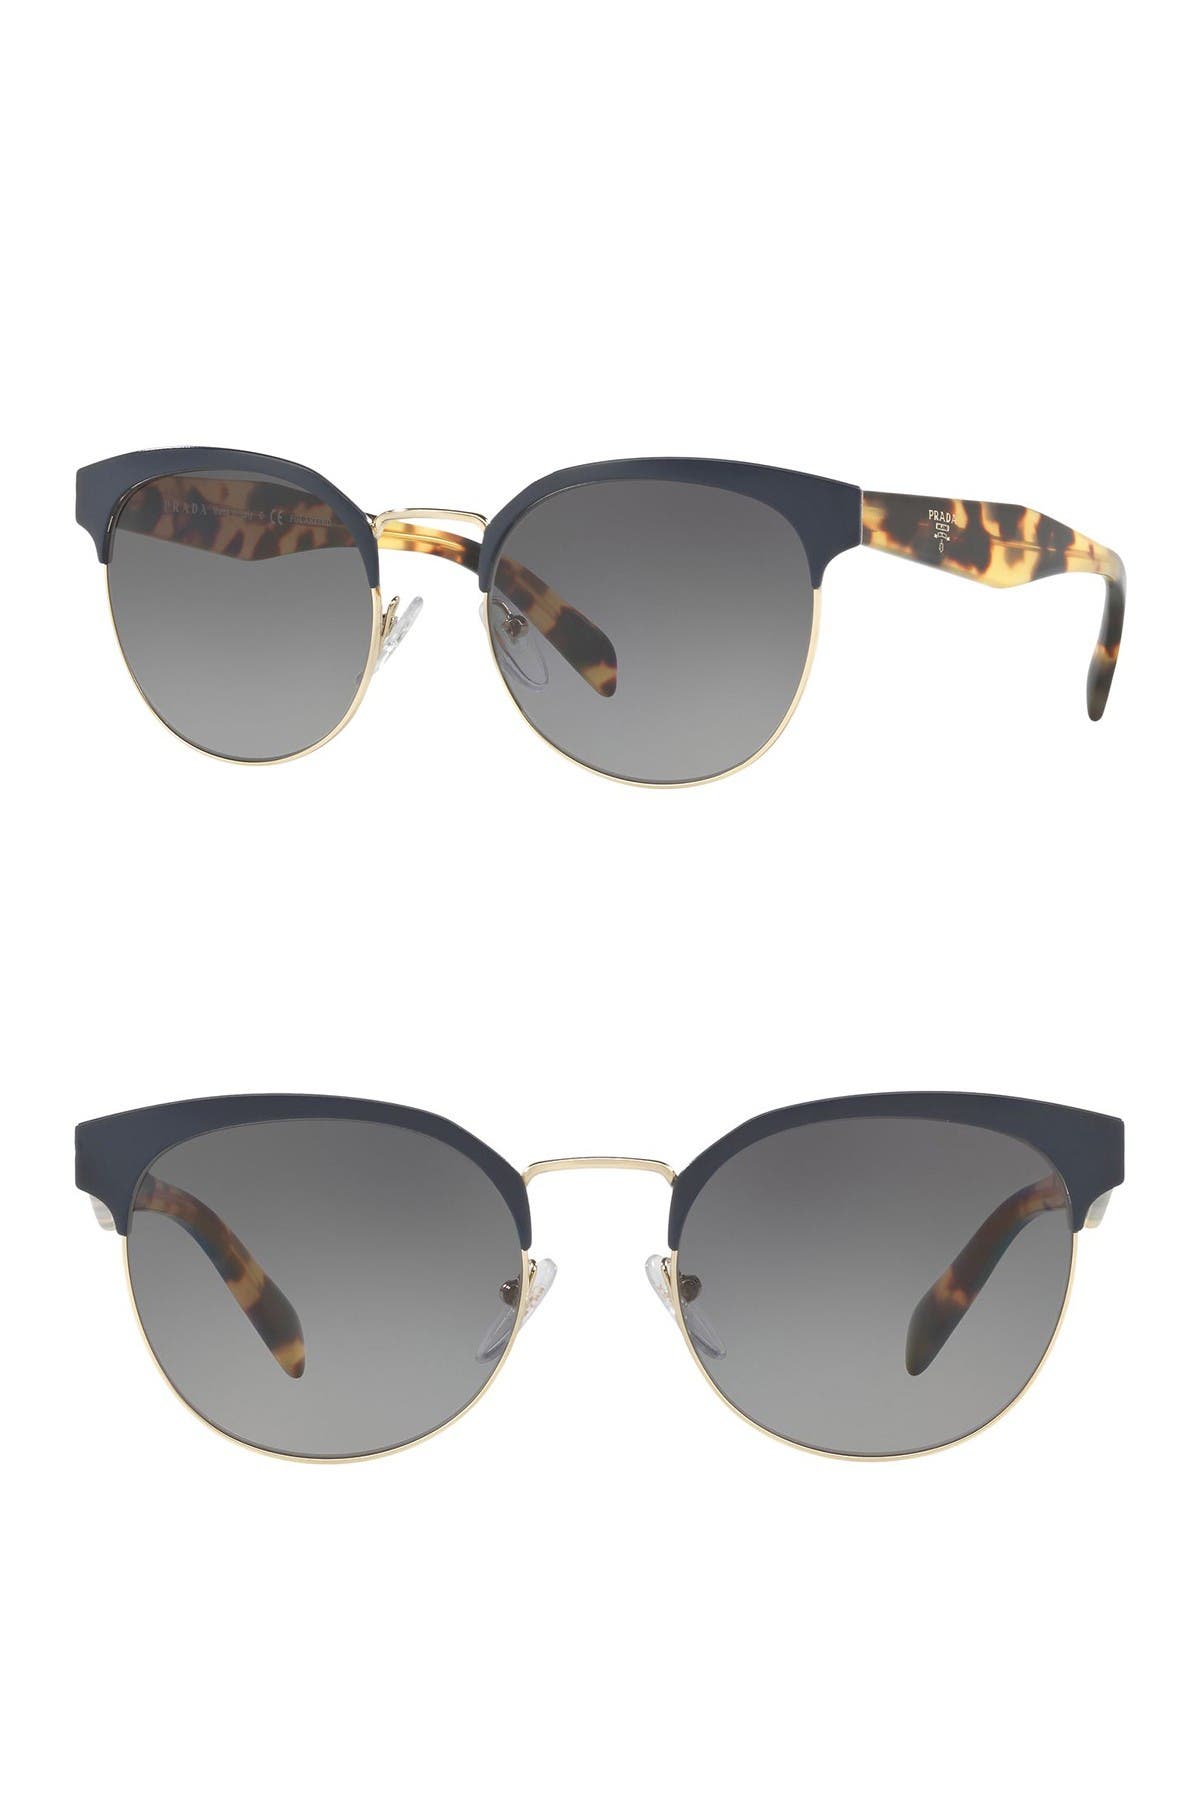 prada women's phantos 49mm sunglasses